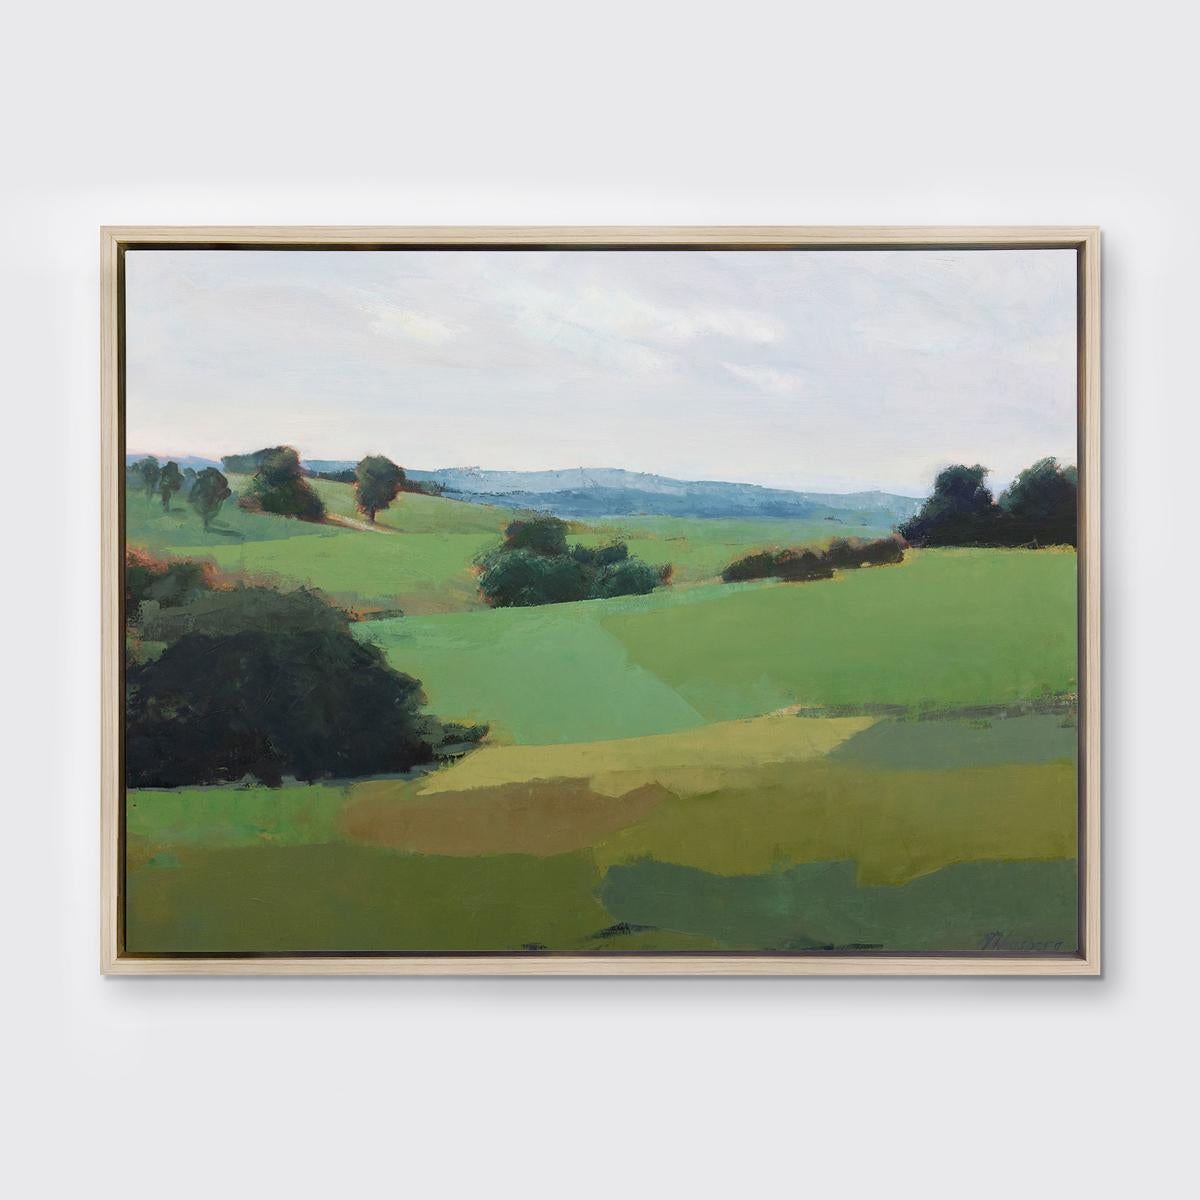 Diese limitierte Auflage des Giclée-Landschaftsdrucks von Molly Doe Wensberg hat eine Auflagenhöhe von 195. Es zeichnet sich durch eine kühle grüne Farbpalette aus und fängt eine Landschaftsszene mit üppigem Laub und sanften Hügeln ein. Der Künstler